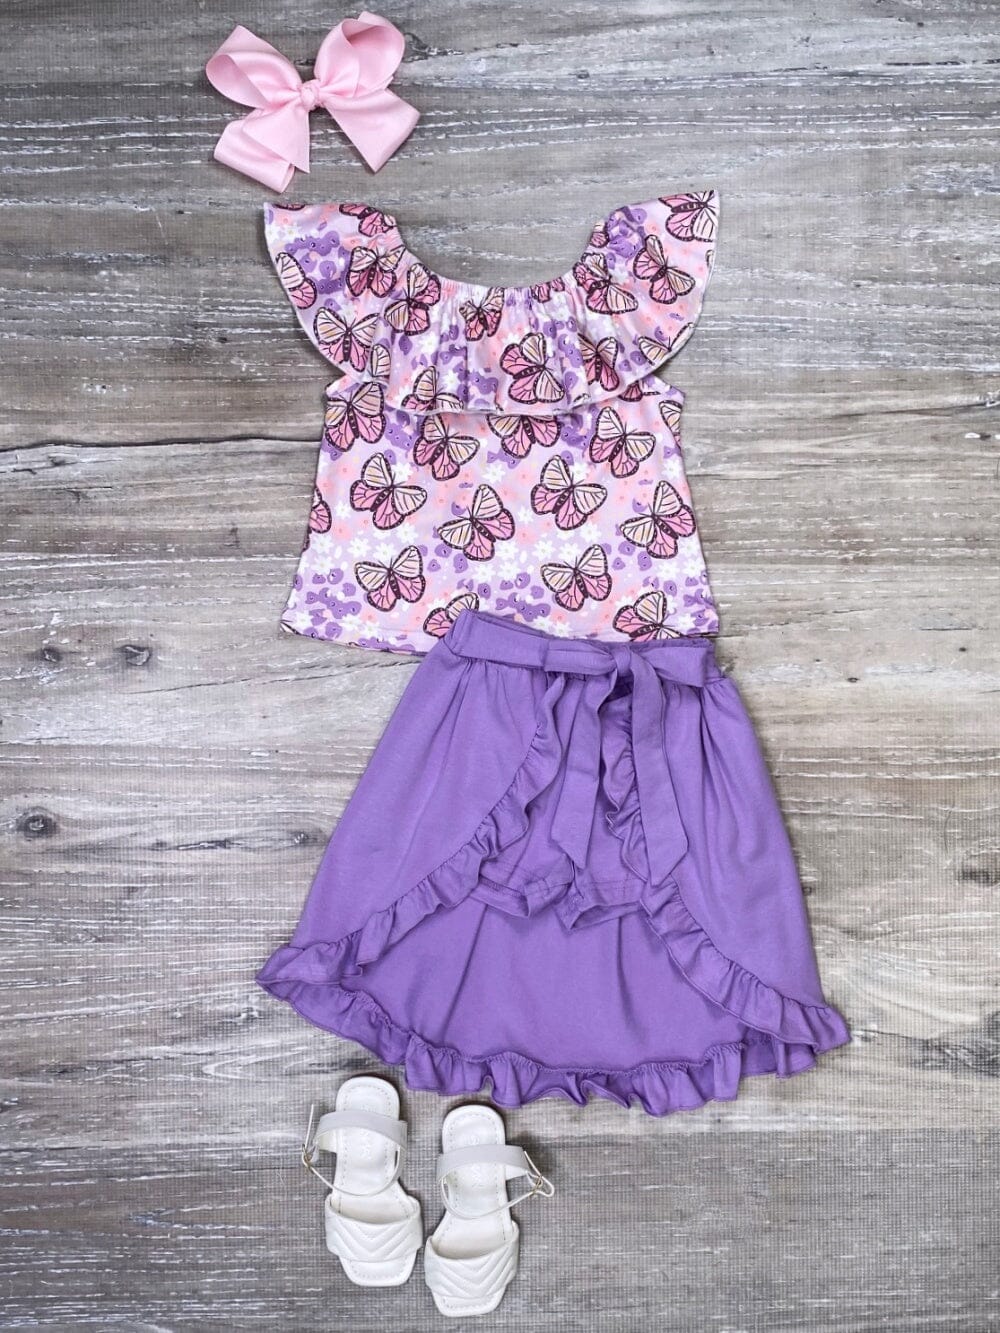 Fly Like a Butterfly Ruffle Girls Purple Skort Outfit - Sydney So Sweet